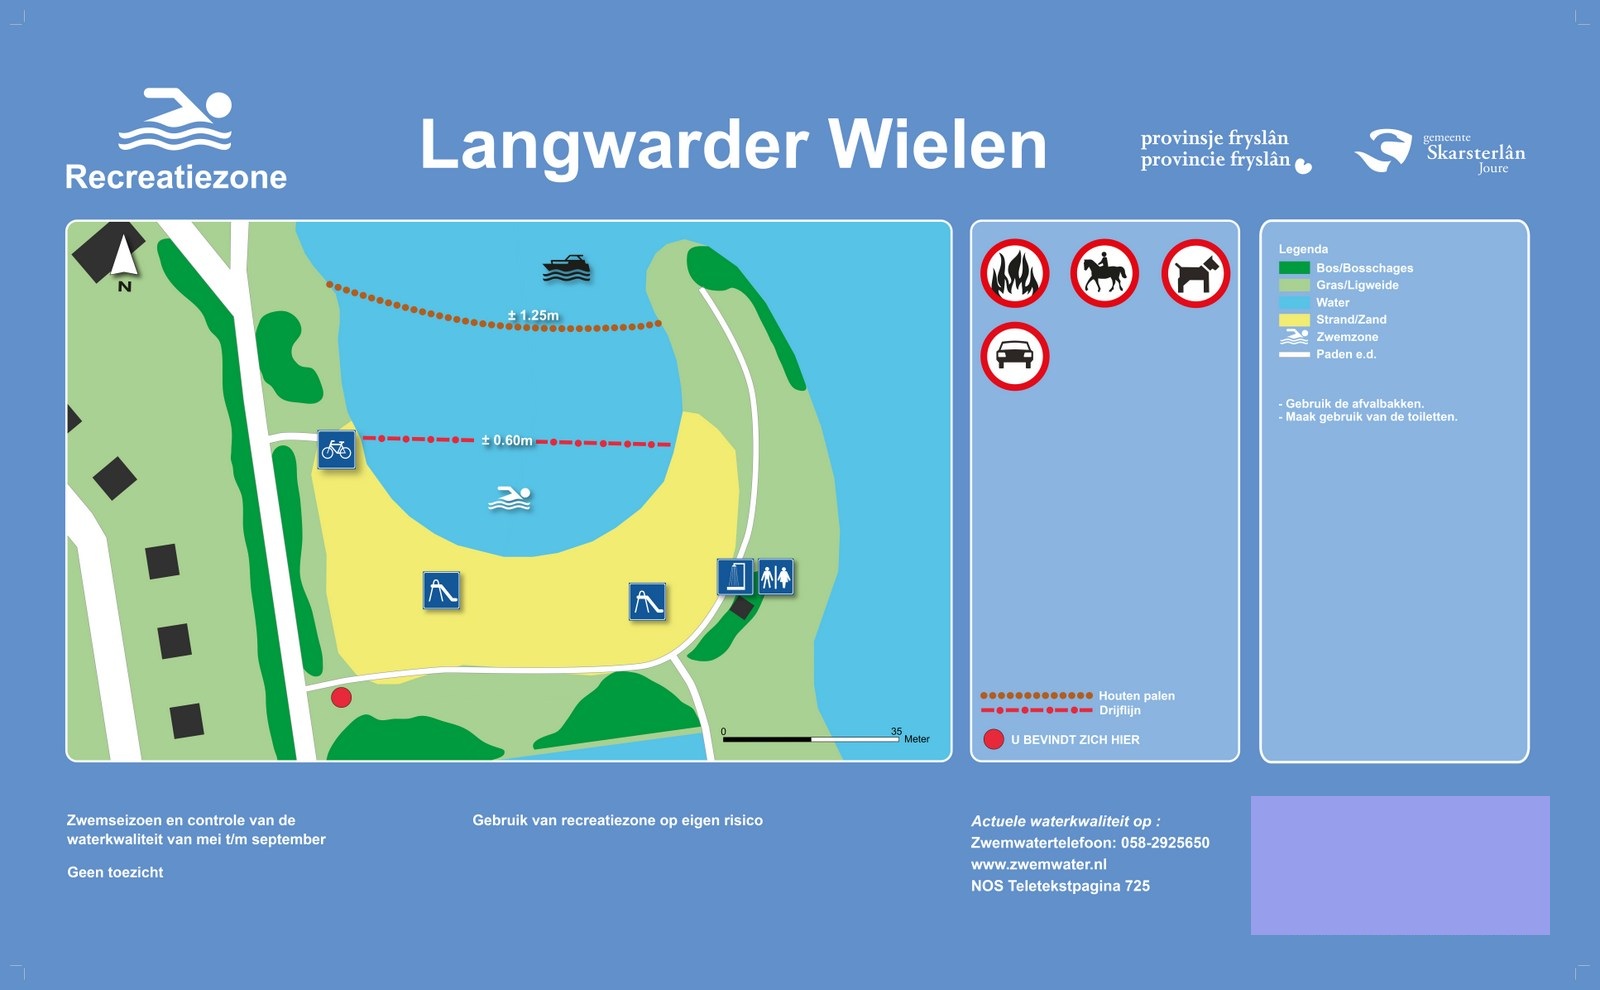 Het informatiebord bij zwemlocatie Langwarder Wielen